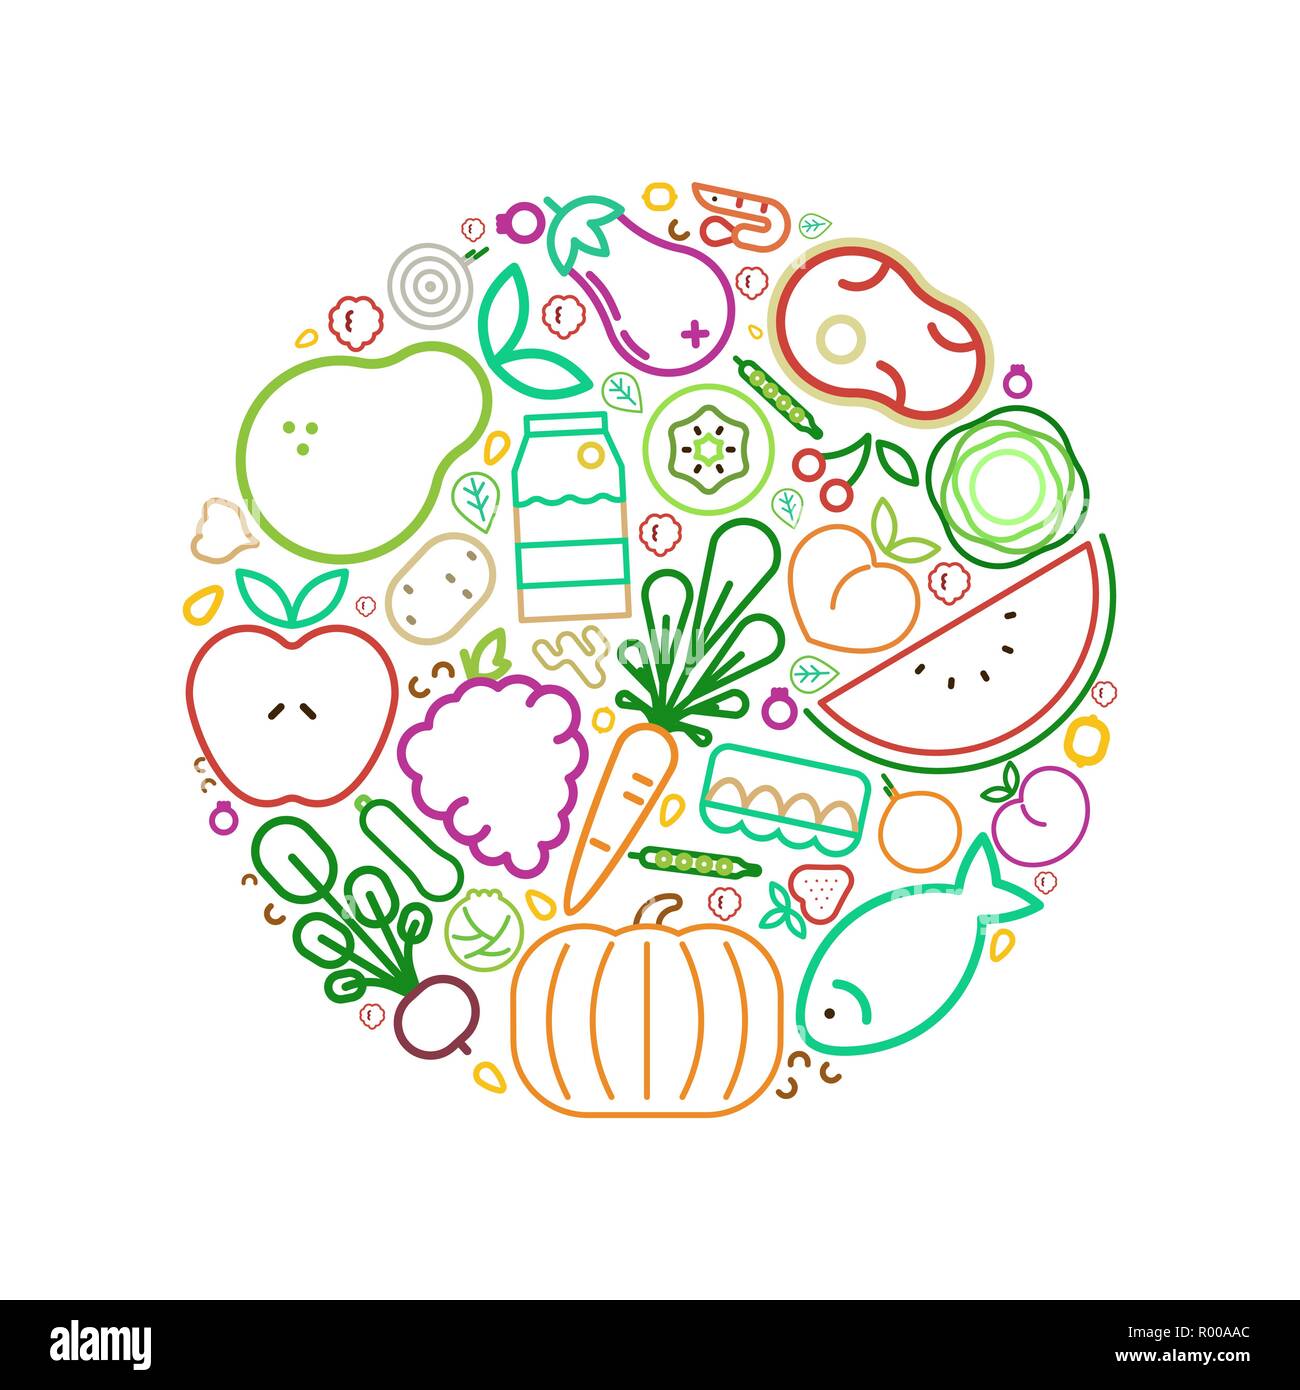 Essen Symbole Kreis Illustration für gesunde Ernährung oder ausgewogene Ernährung Konzept. Enthält Obst, Gemüse, Fleisch und Milchprodukte. Stock Vektor